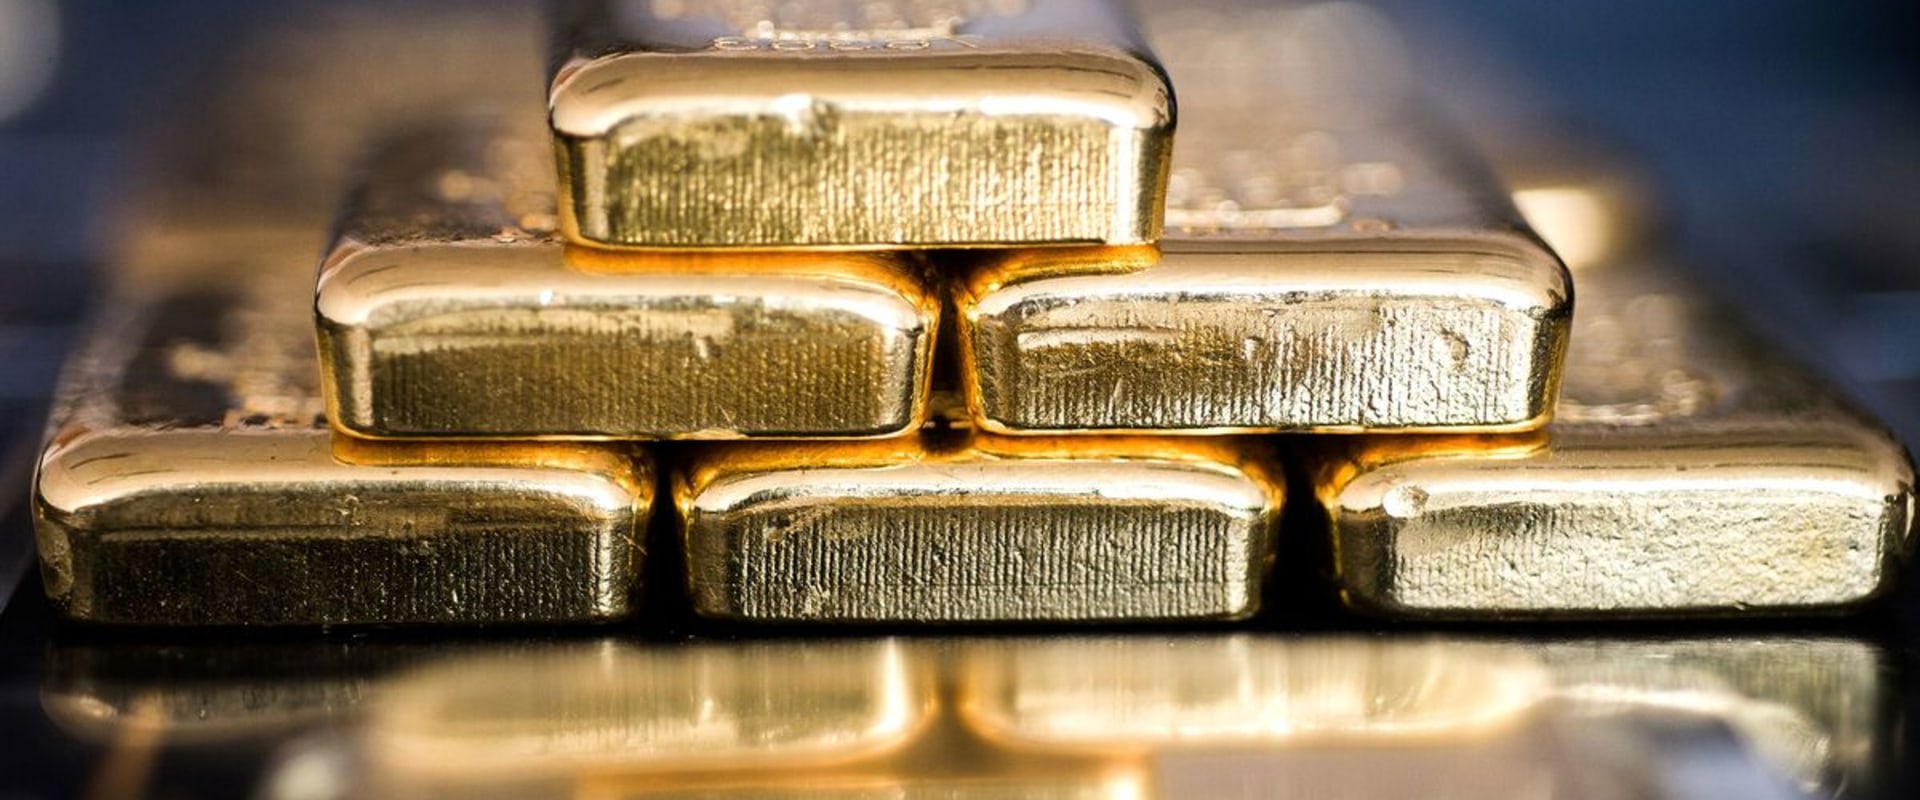 Is Gold a High Risk Asset? An Expert's Perspective